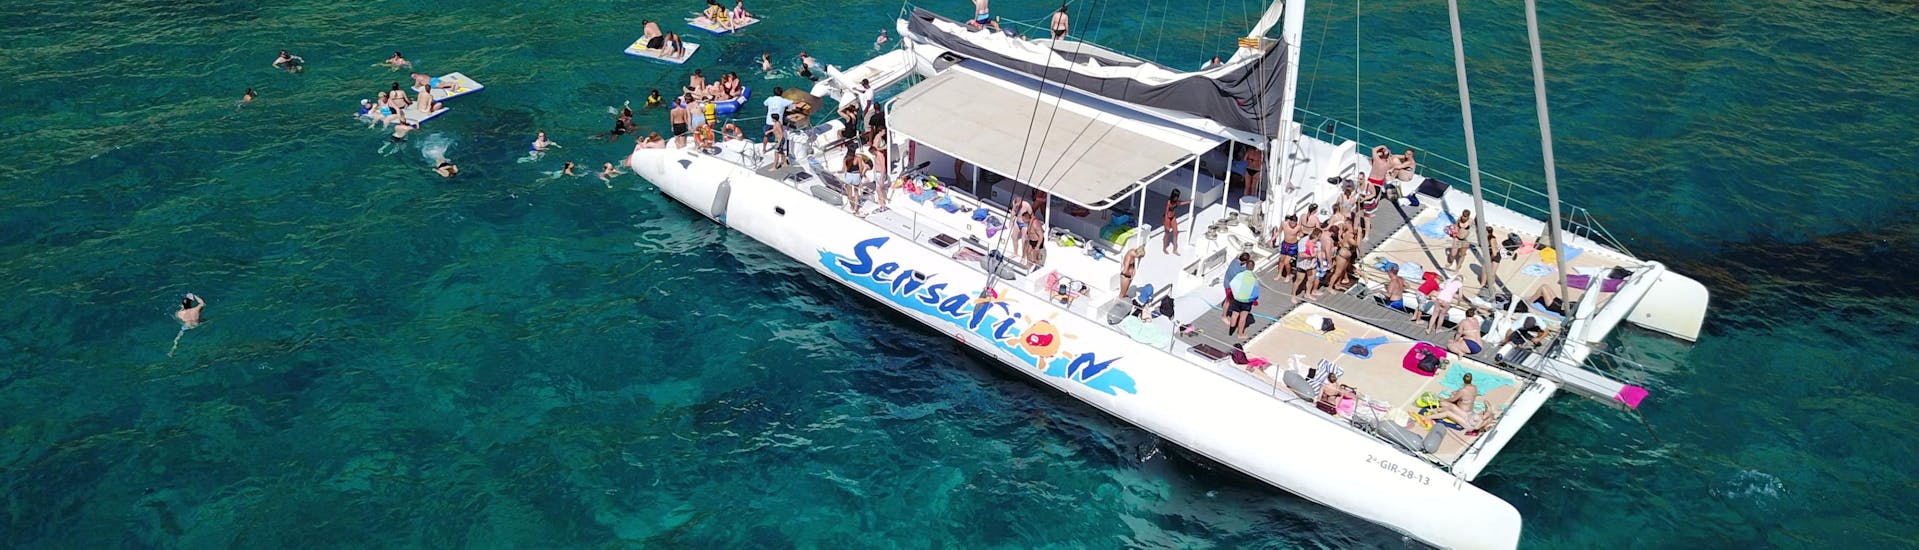 Gita in barca con Catamarans Sensations Costa Brava lungo la Costa Brava con soste per nuotare e fare snorkeling.